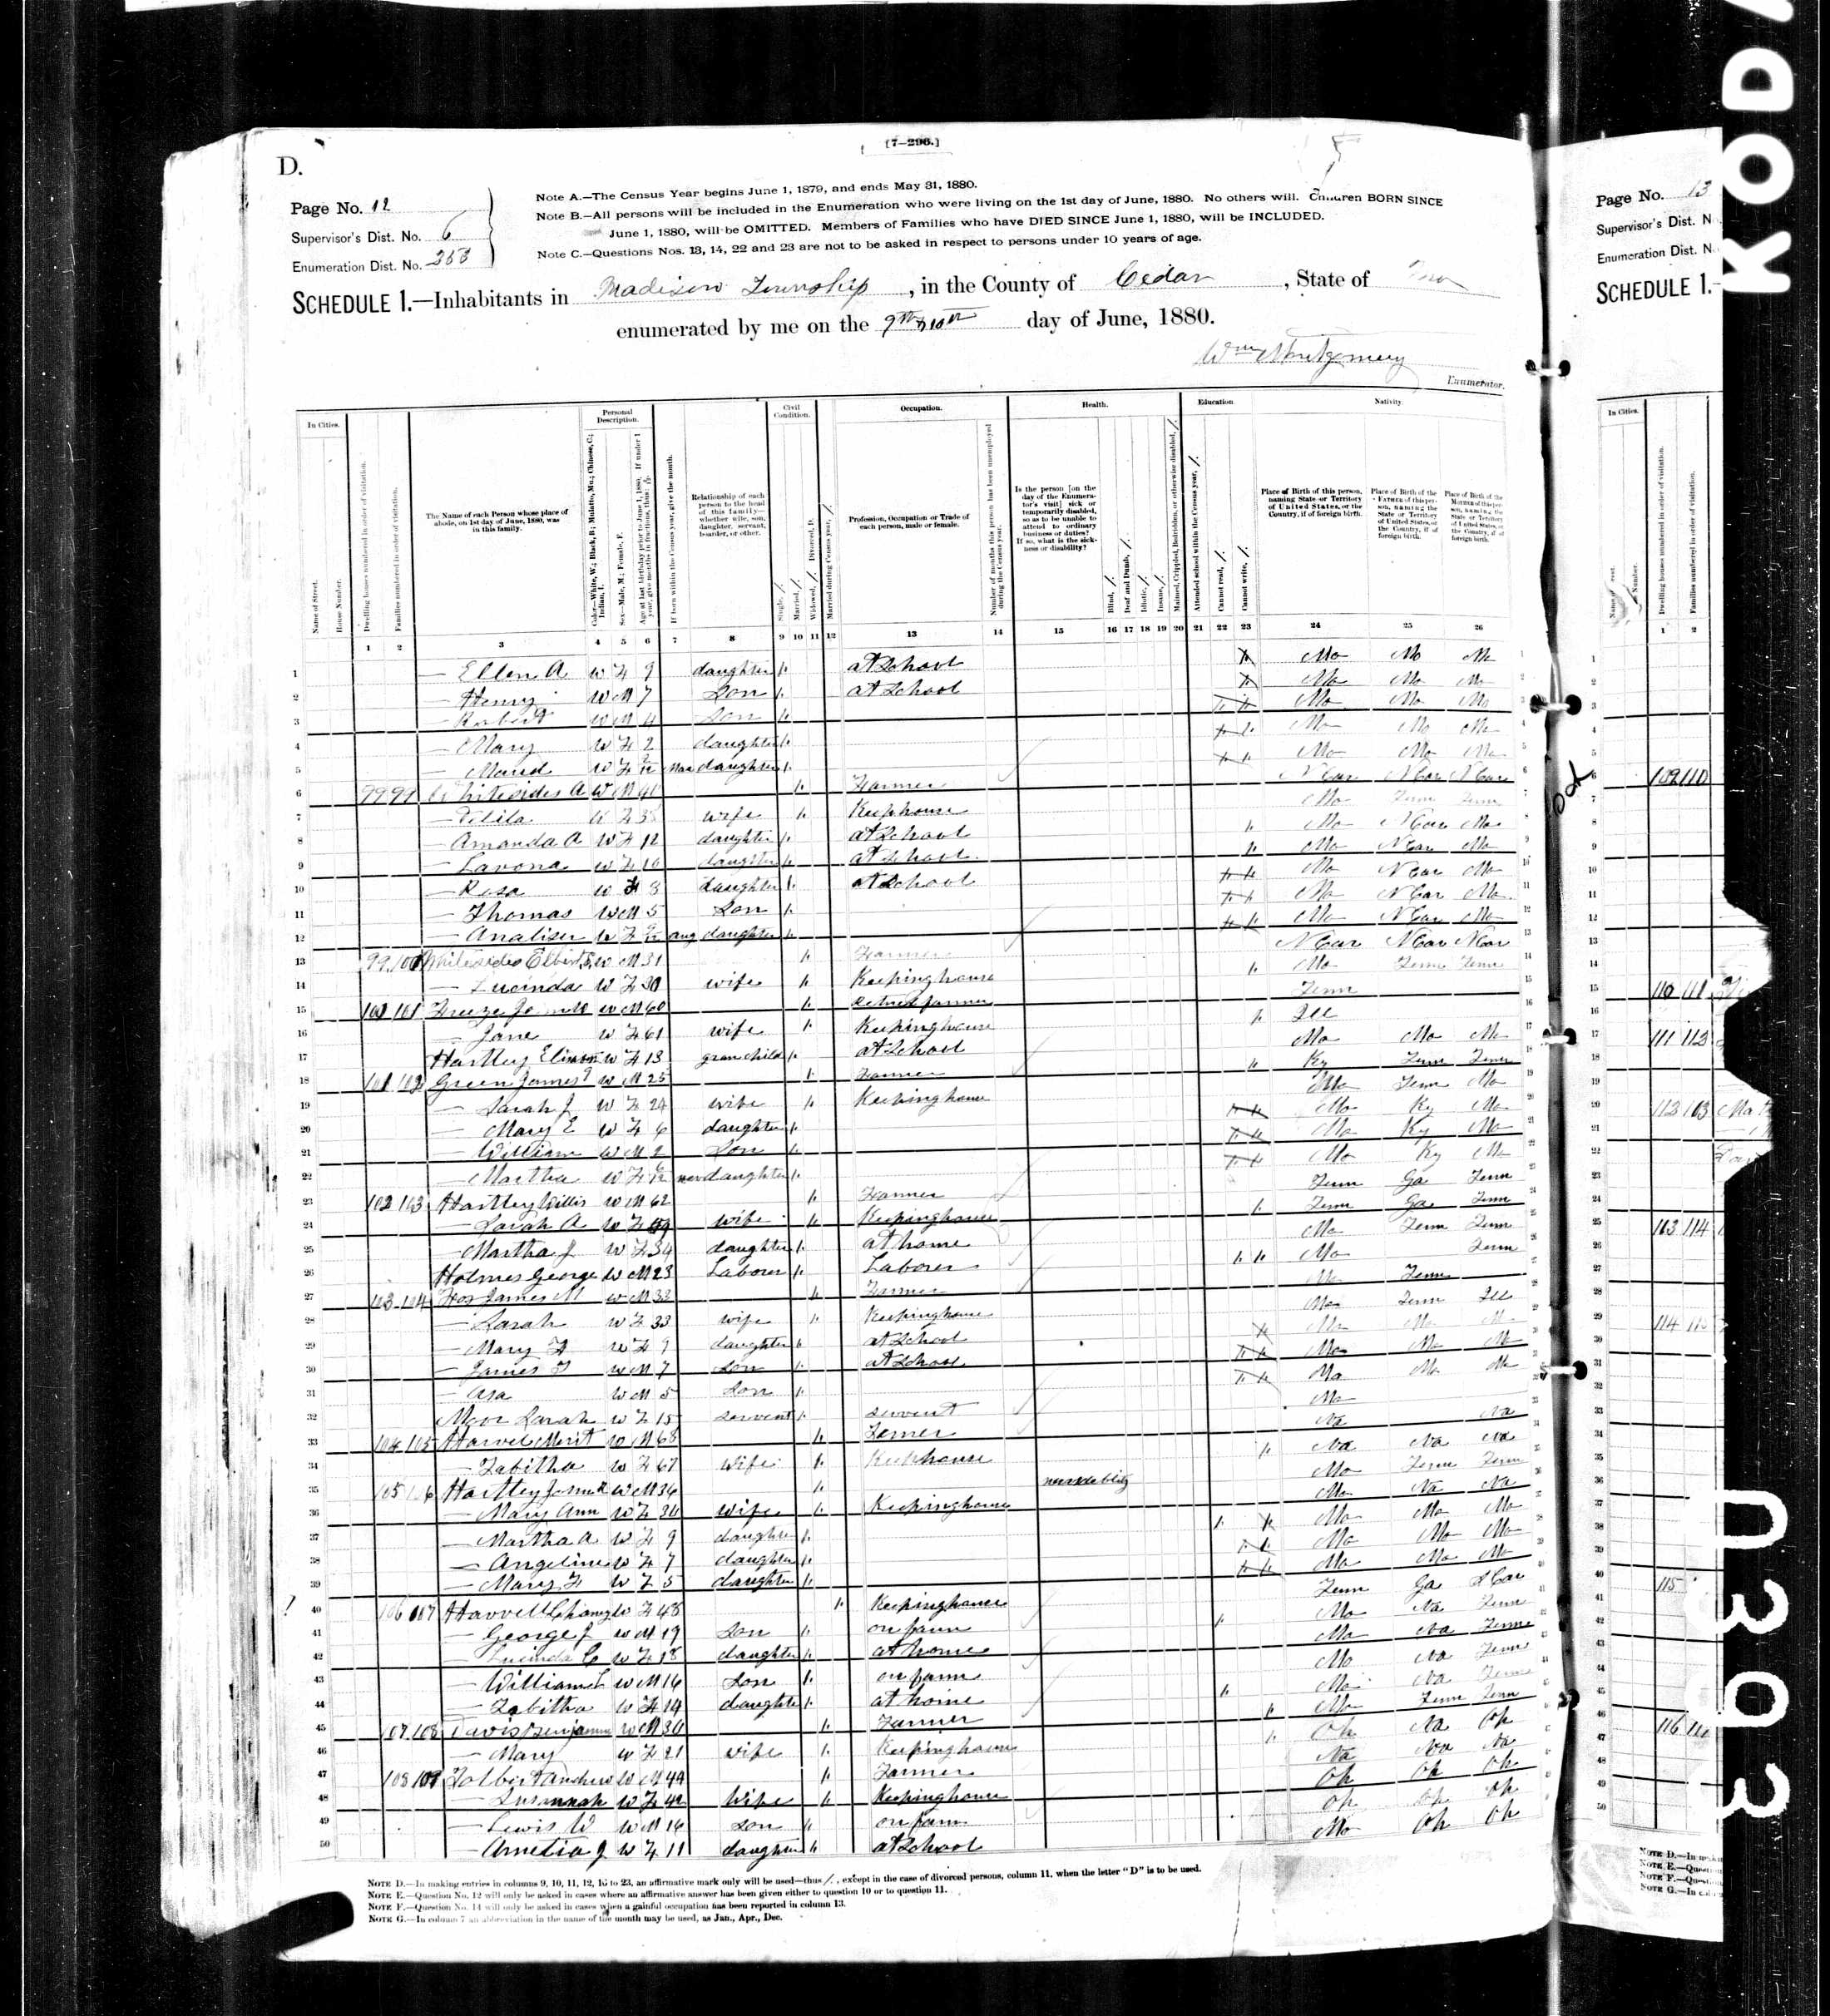 Willis Hartley, 1880 Cedar County, Missouri, census